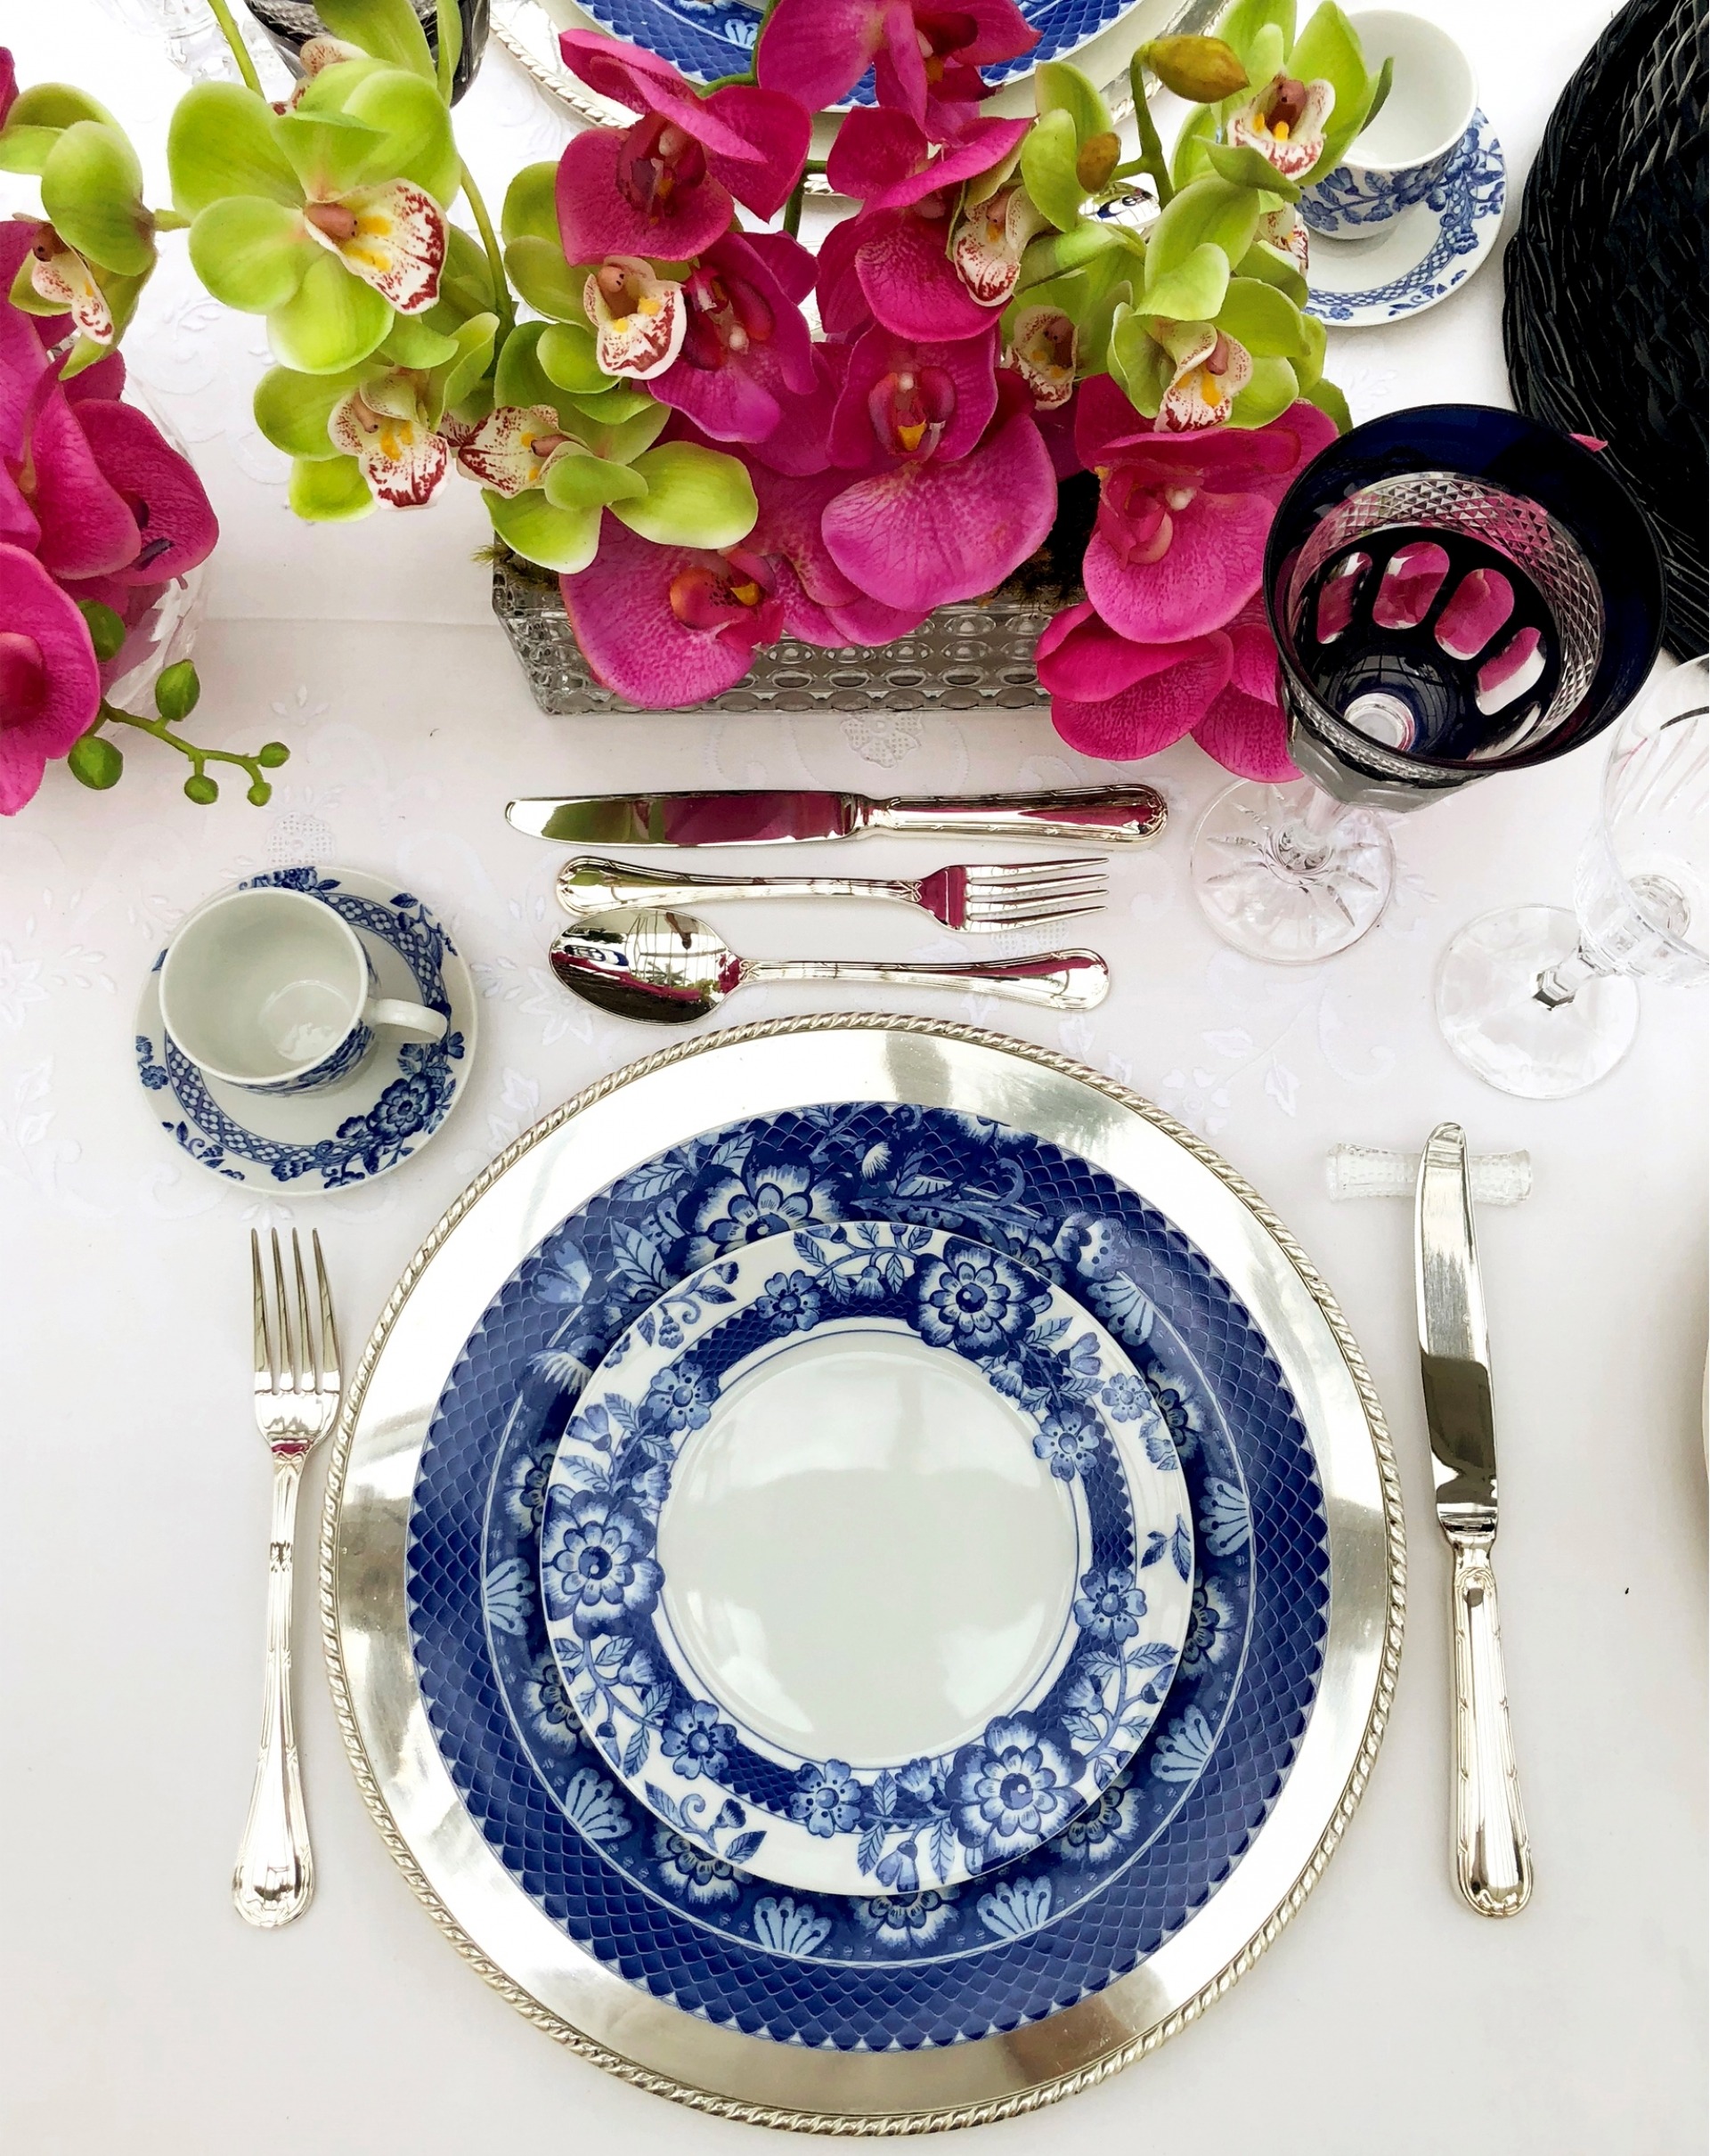 Aparelho jantar azul floral 14 peças DEFEITO